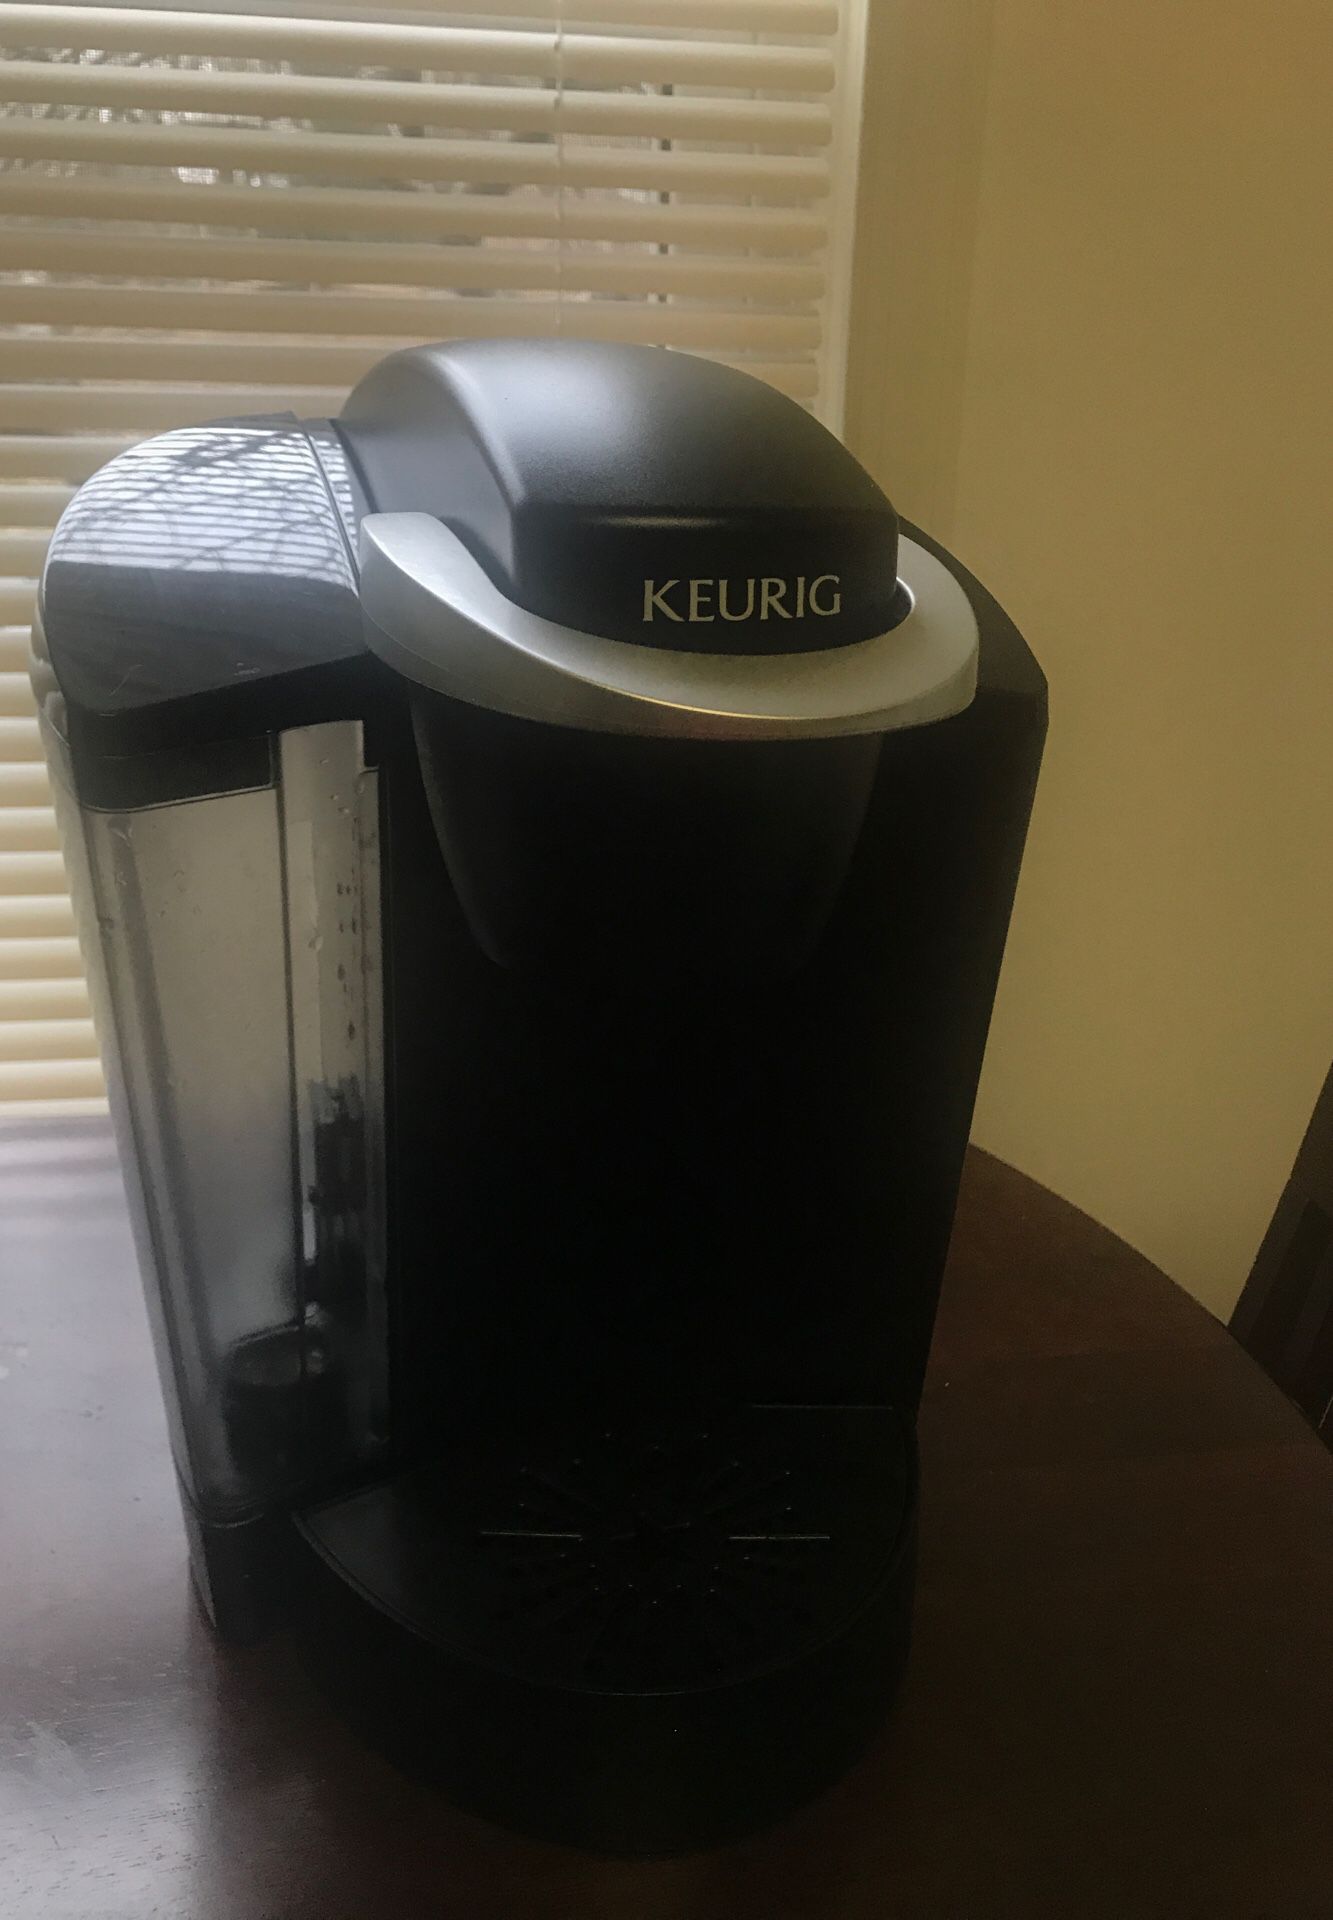 Keurig - coffee maker